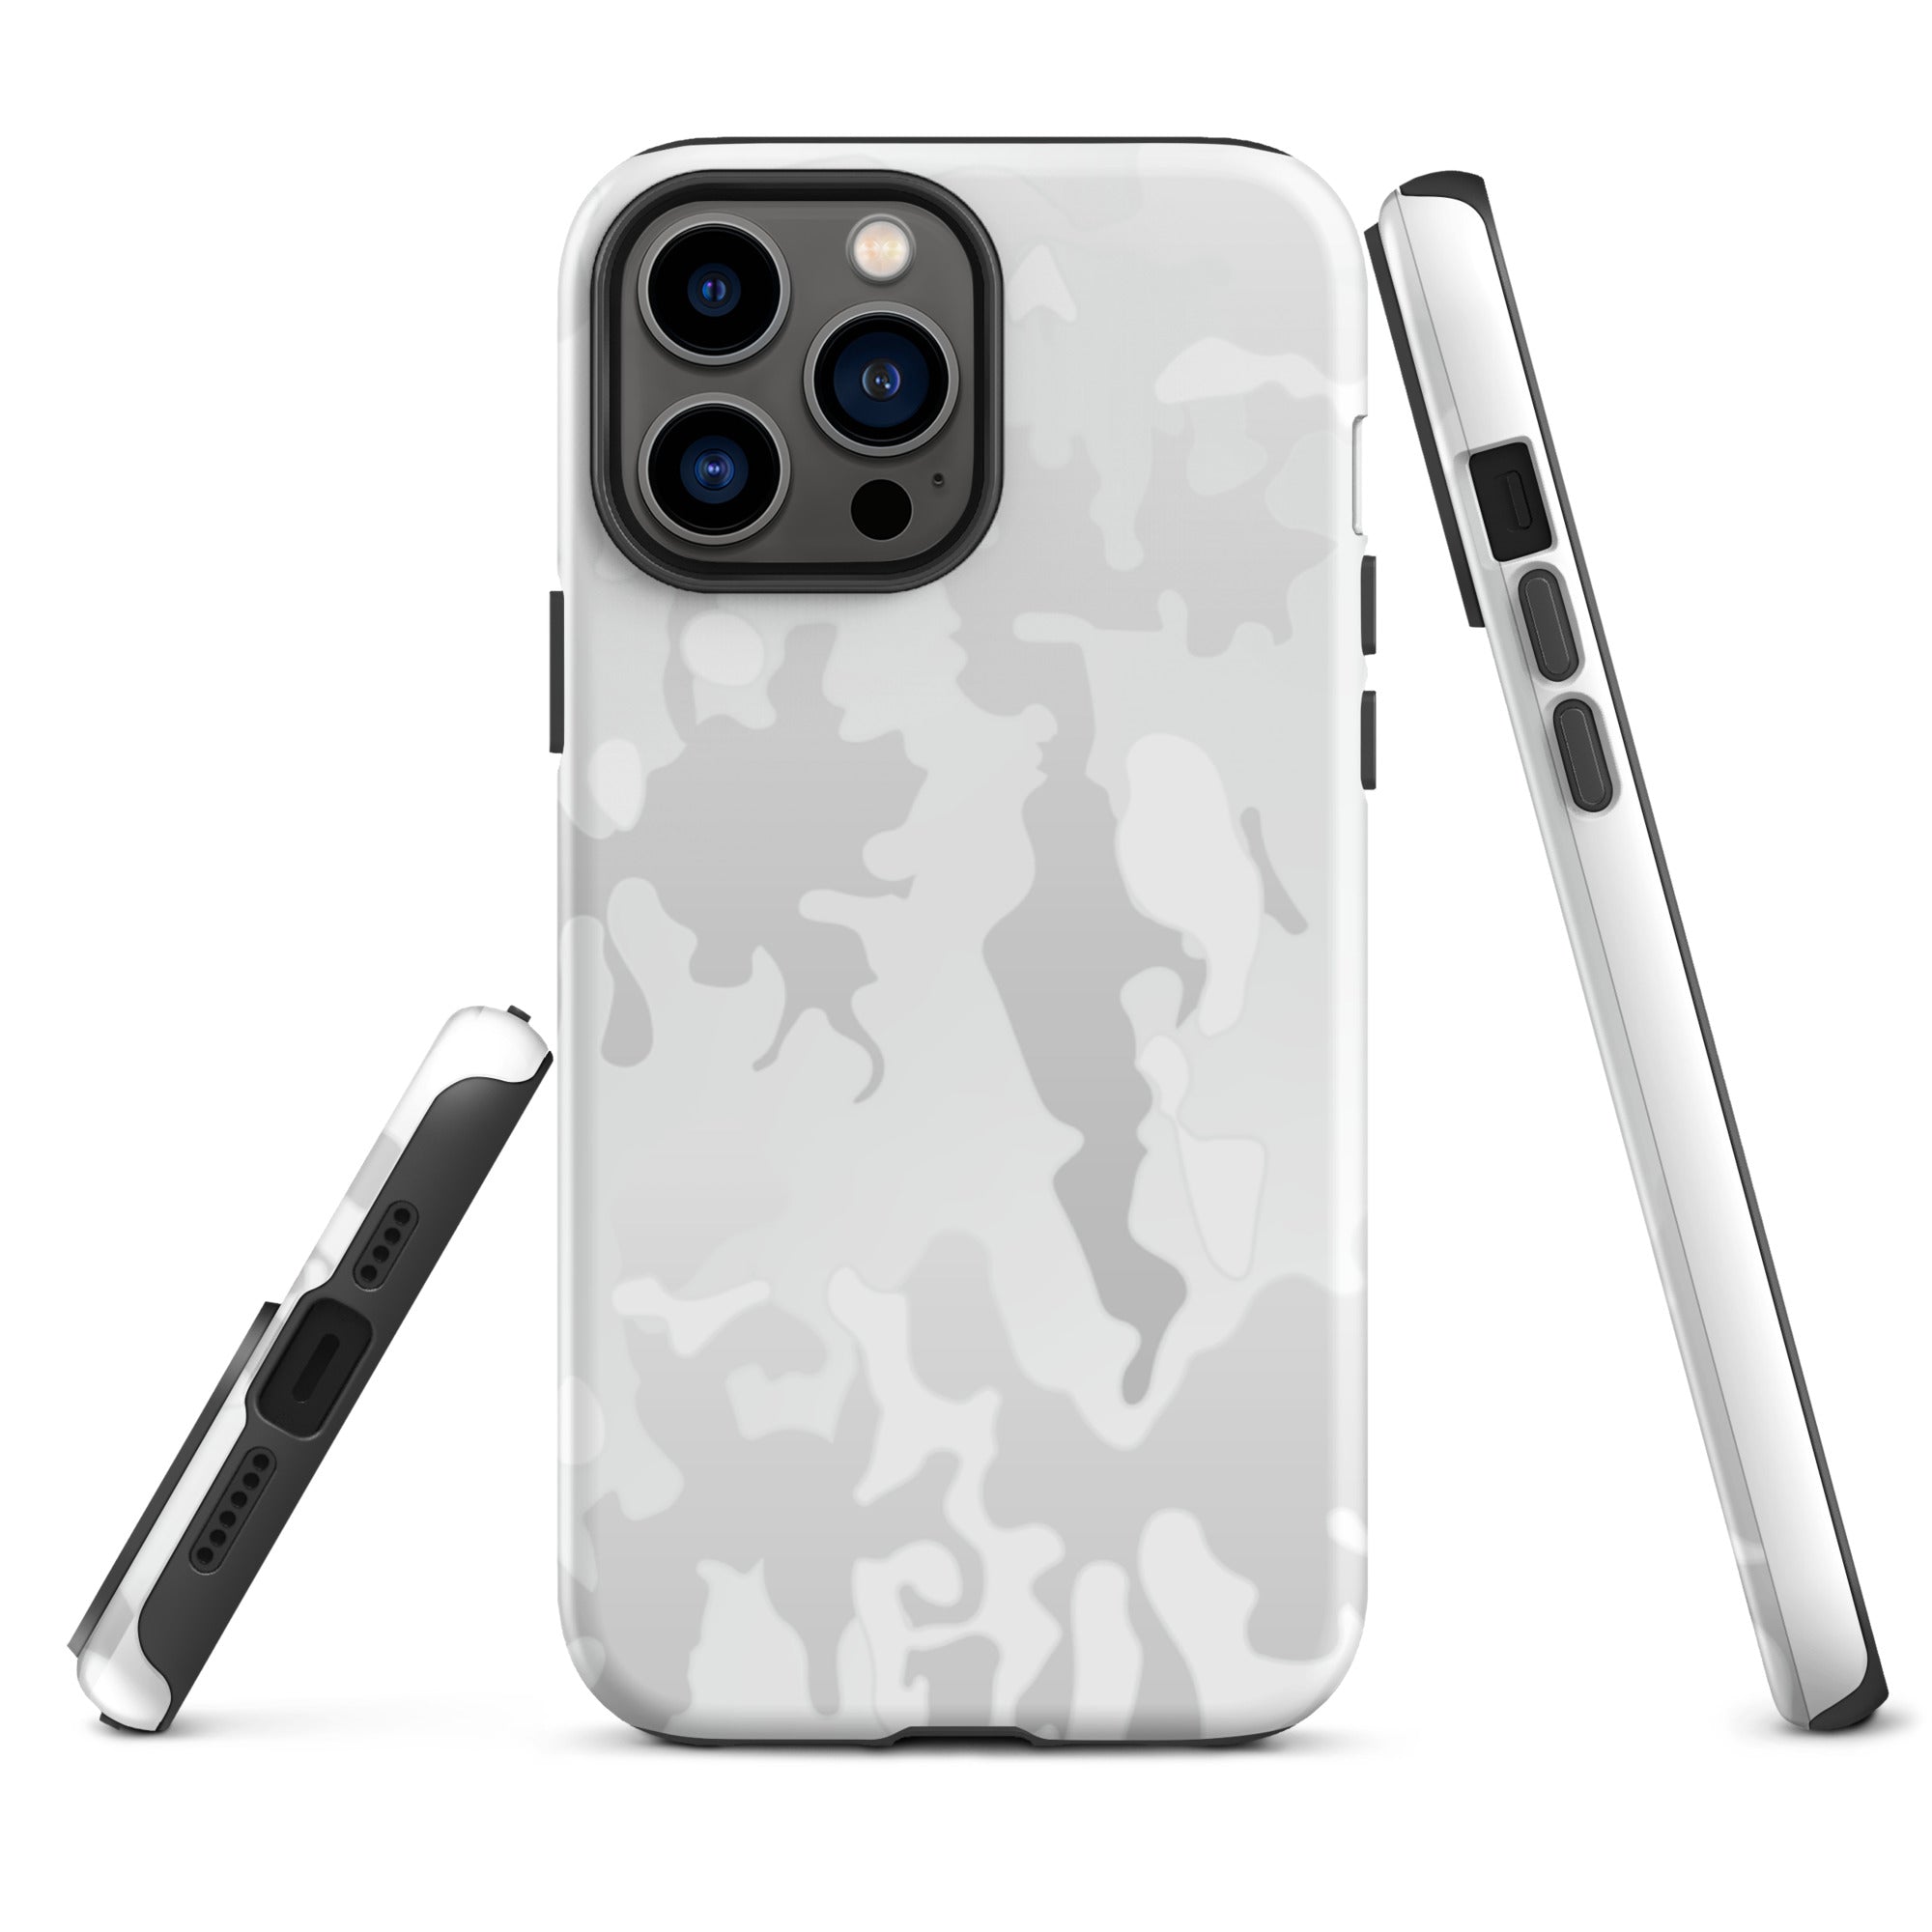 Multicam Arctic iPhone case